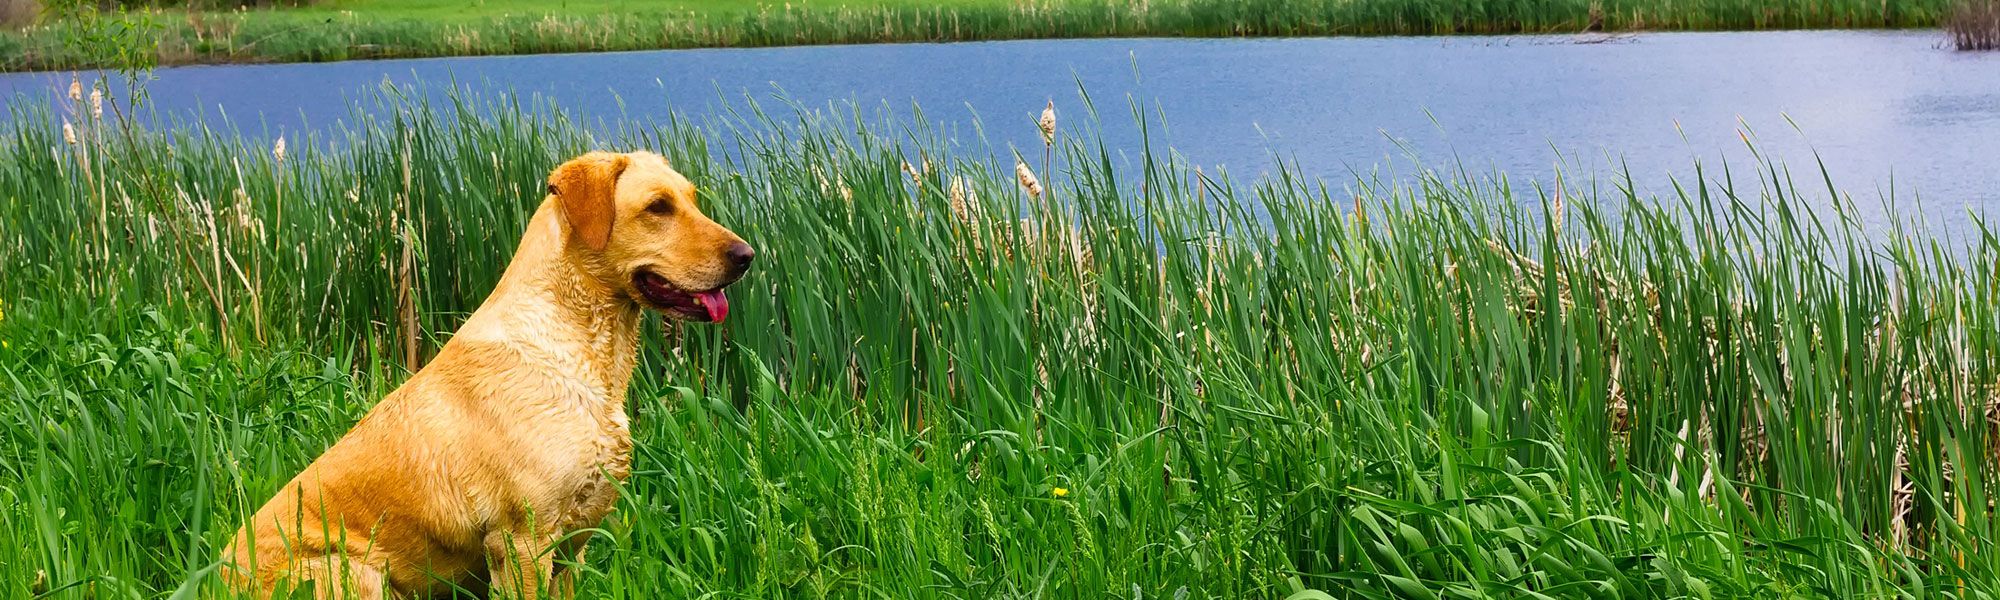 Dog in reeds next to lake